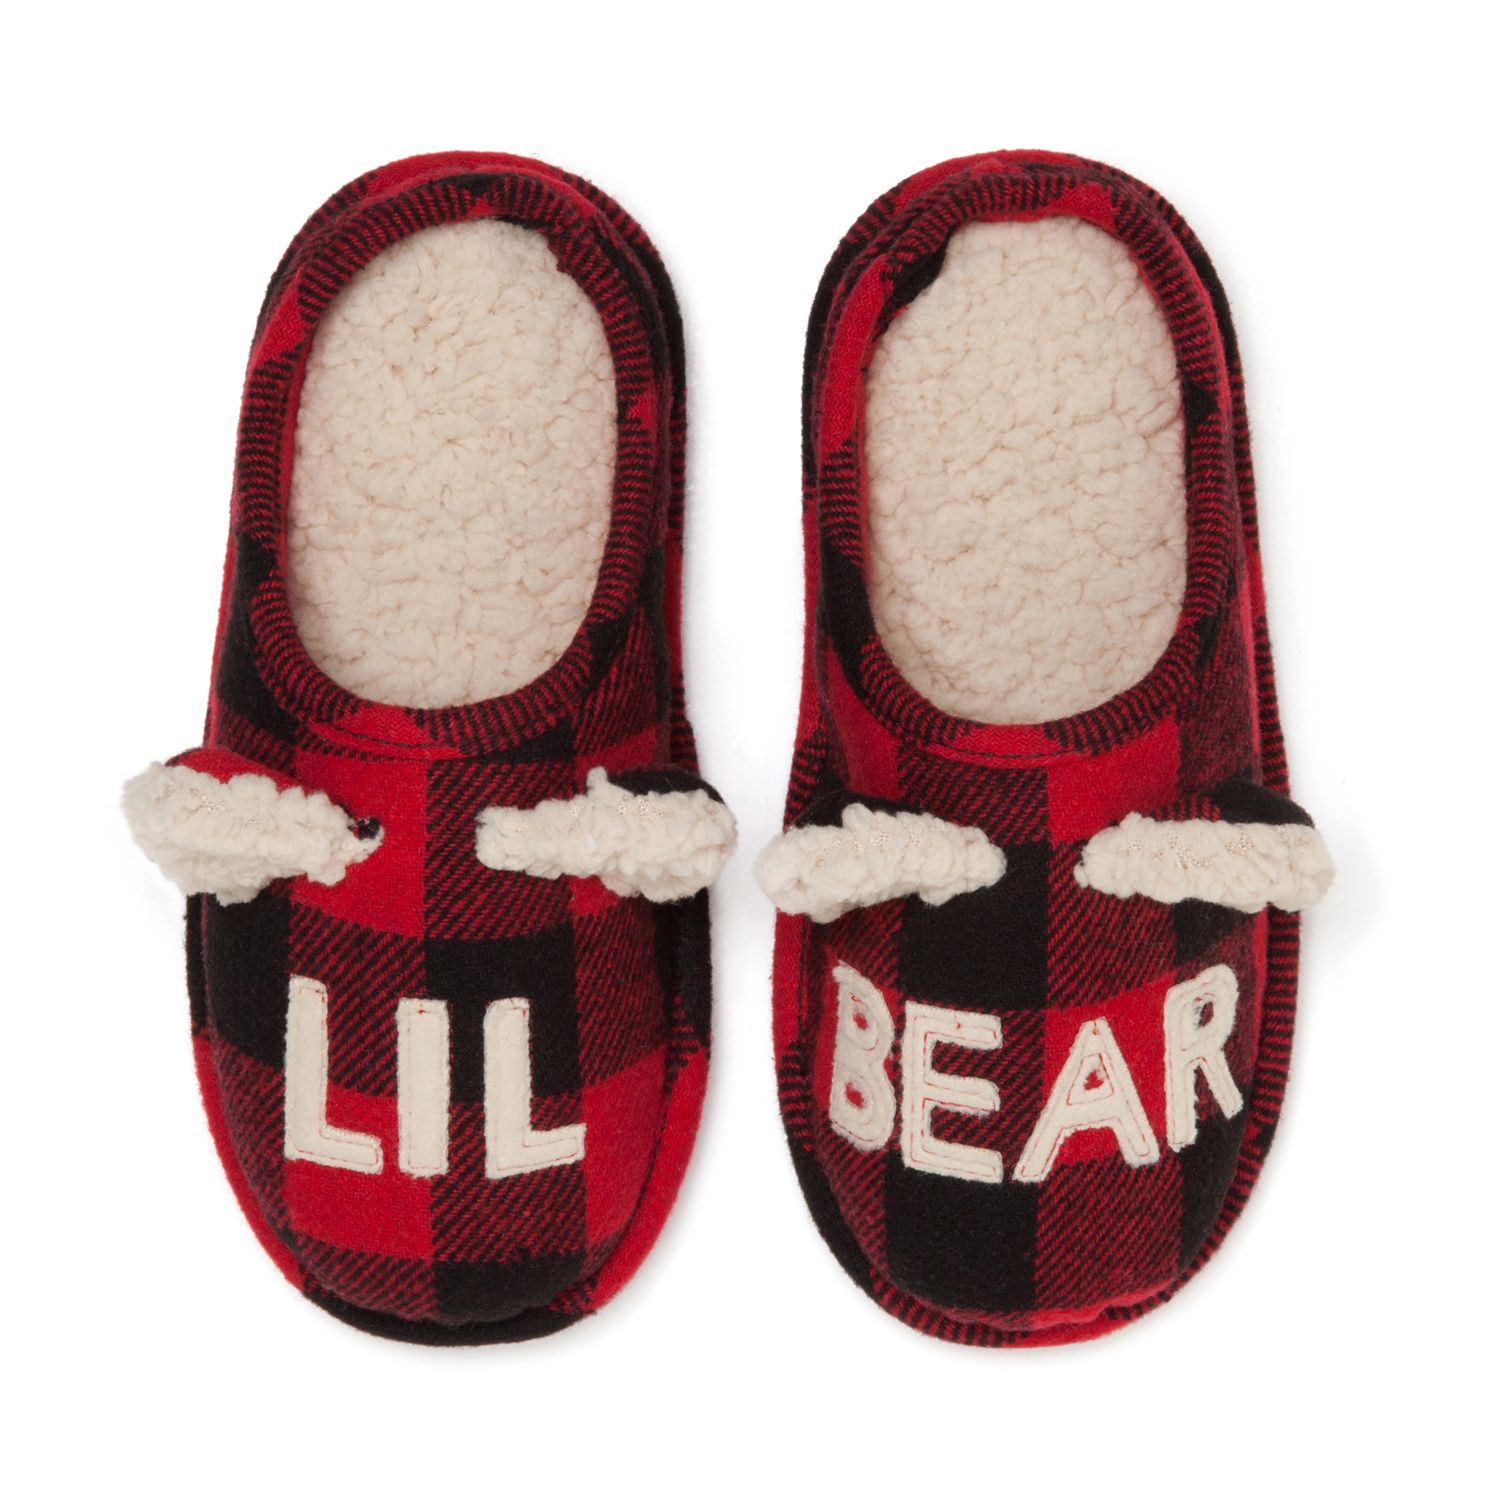 dearfoam kids slippers